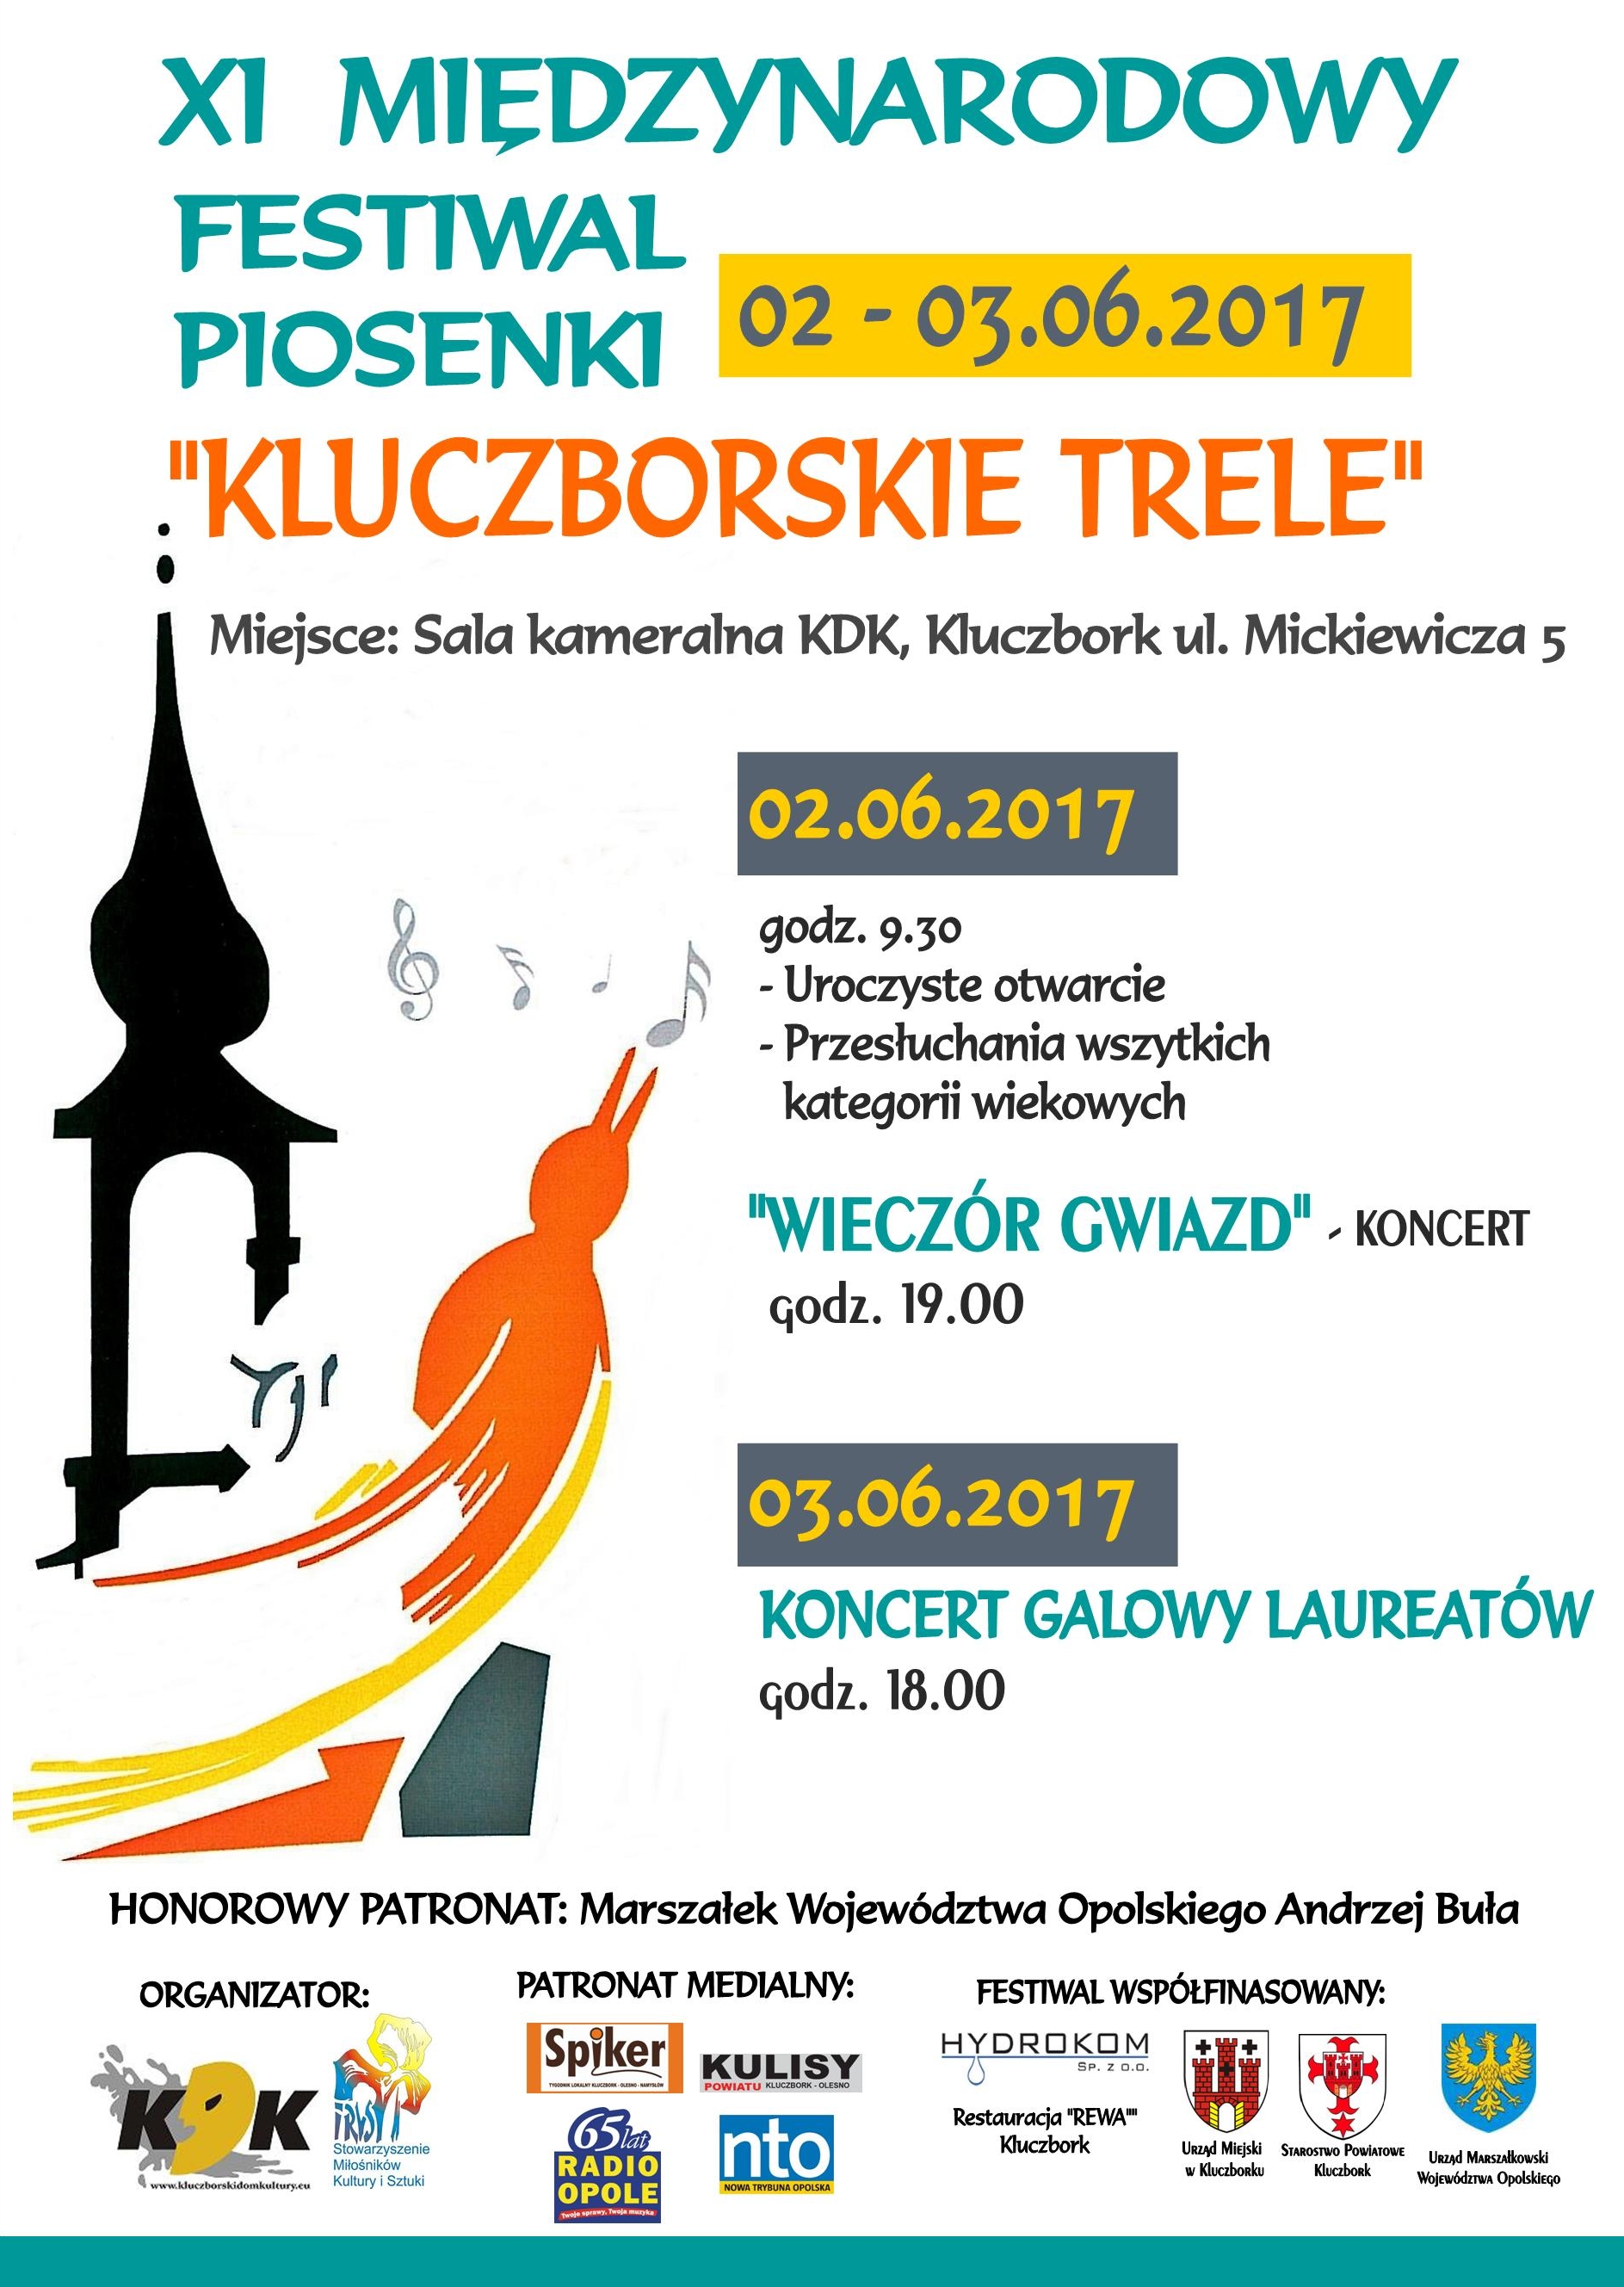 XI Międzynarodowy Festiwal Piosenki 'Kluczborskie Trele'